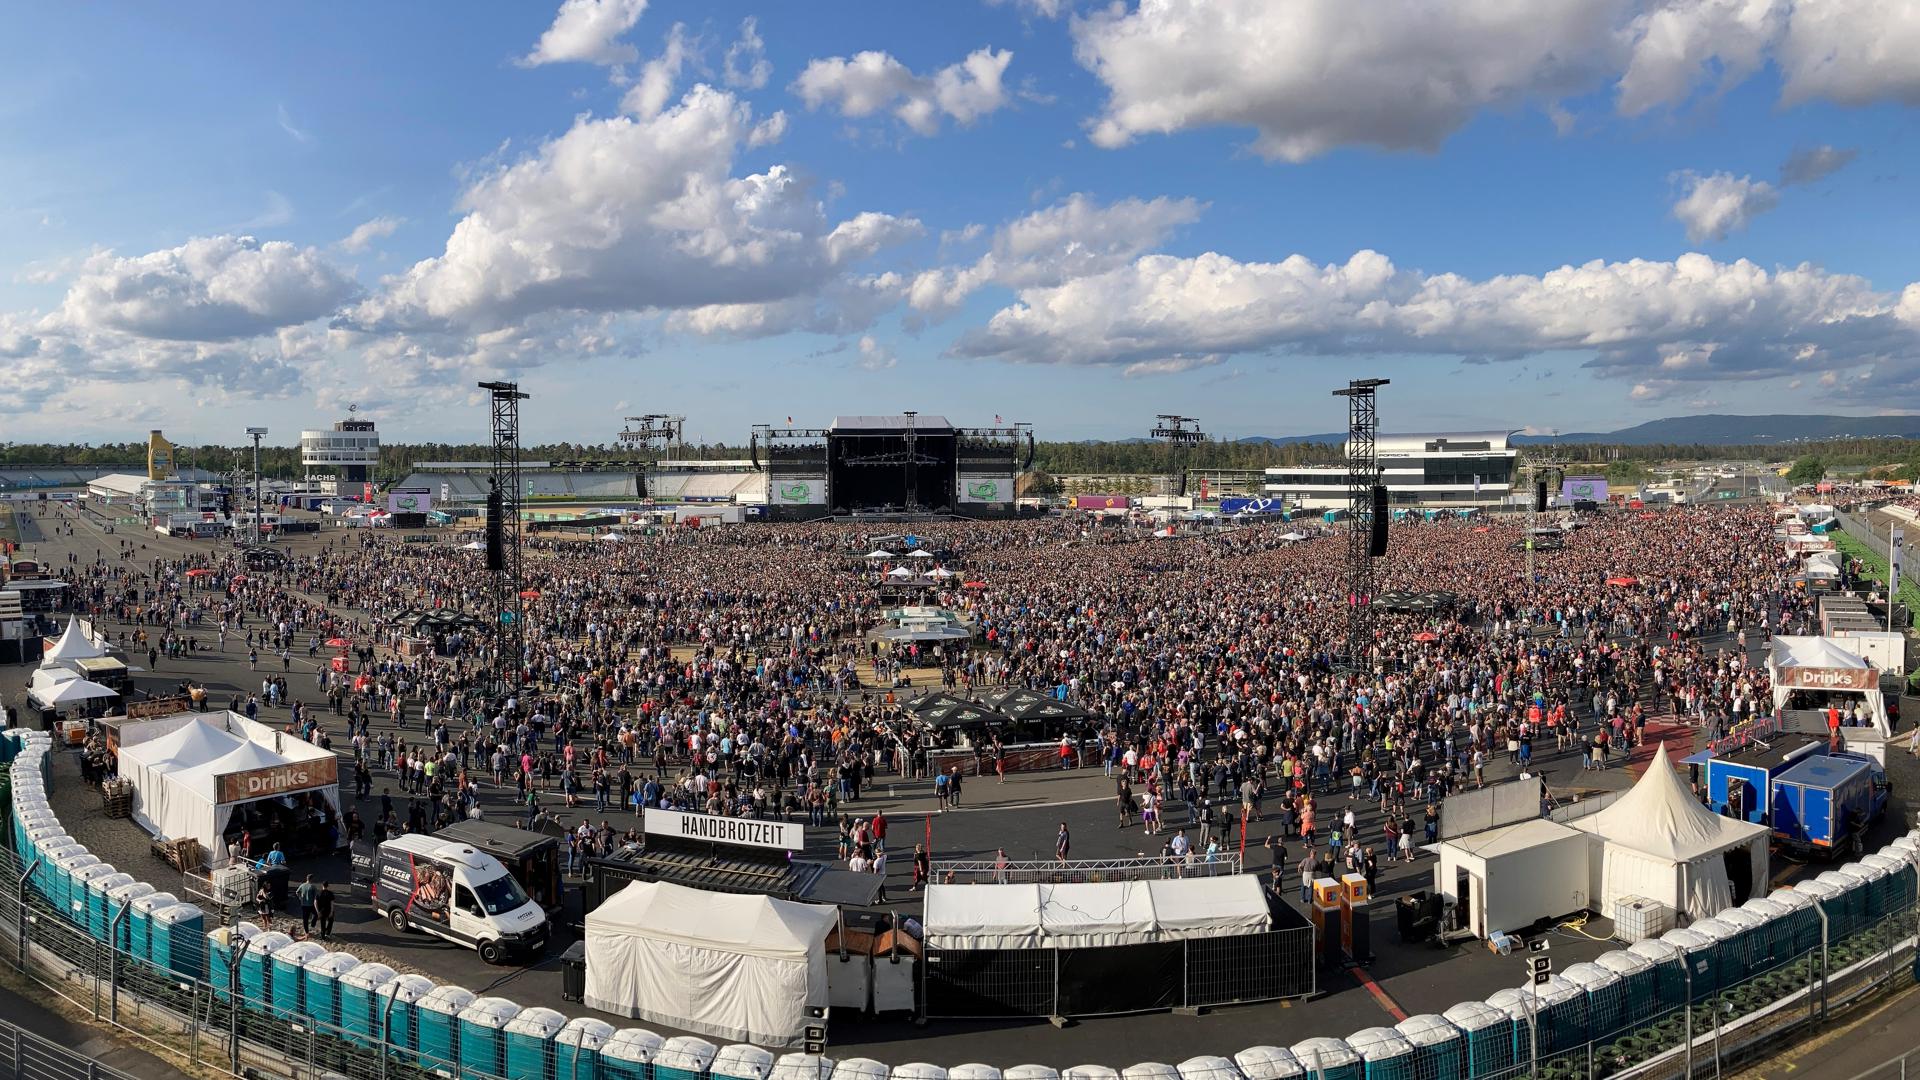 Das Konzert von Bruce Springsteen am Hockenheimring - eine Panoramaaufnahme.